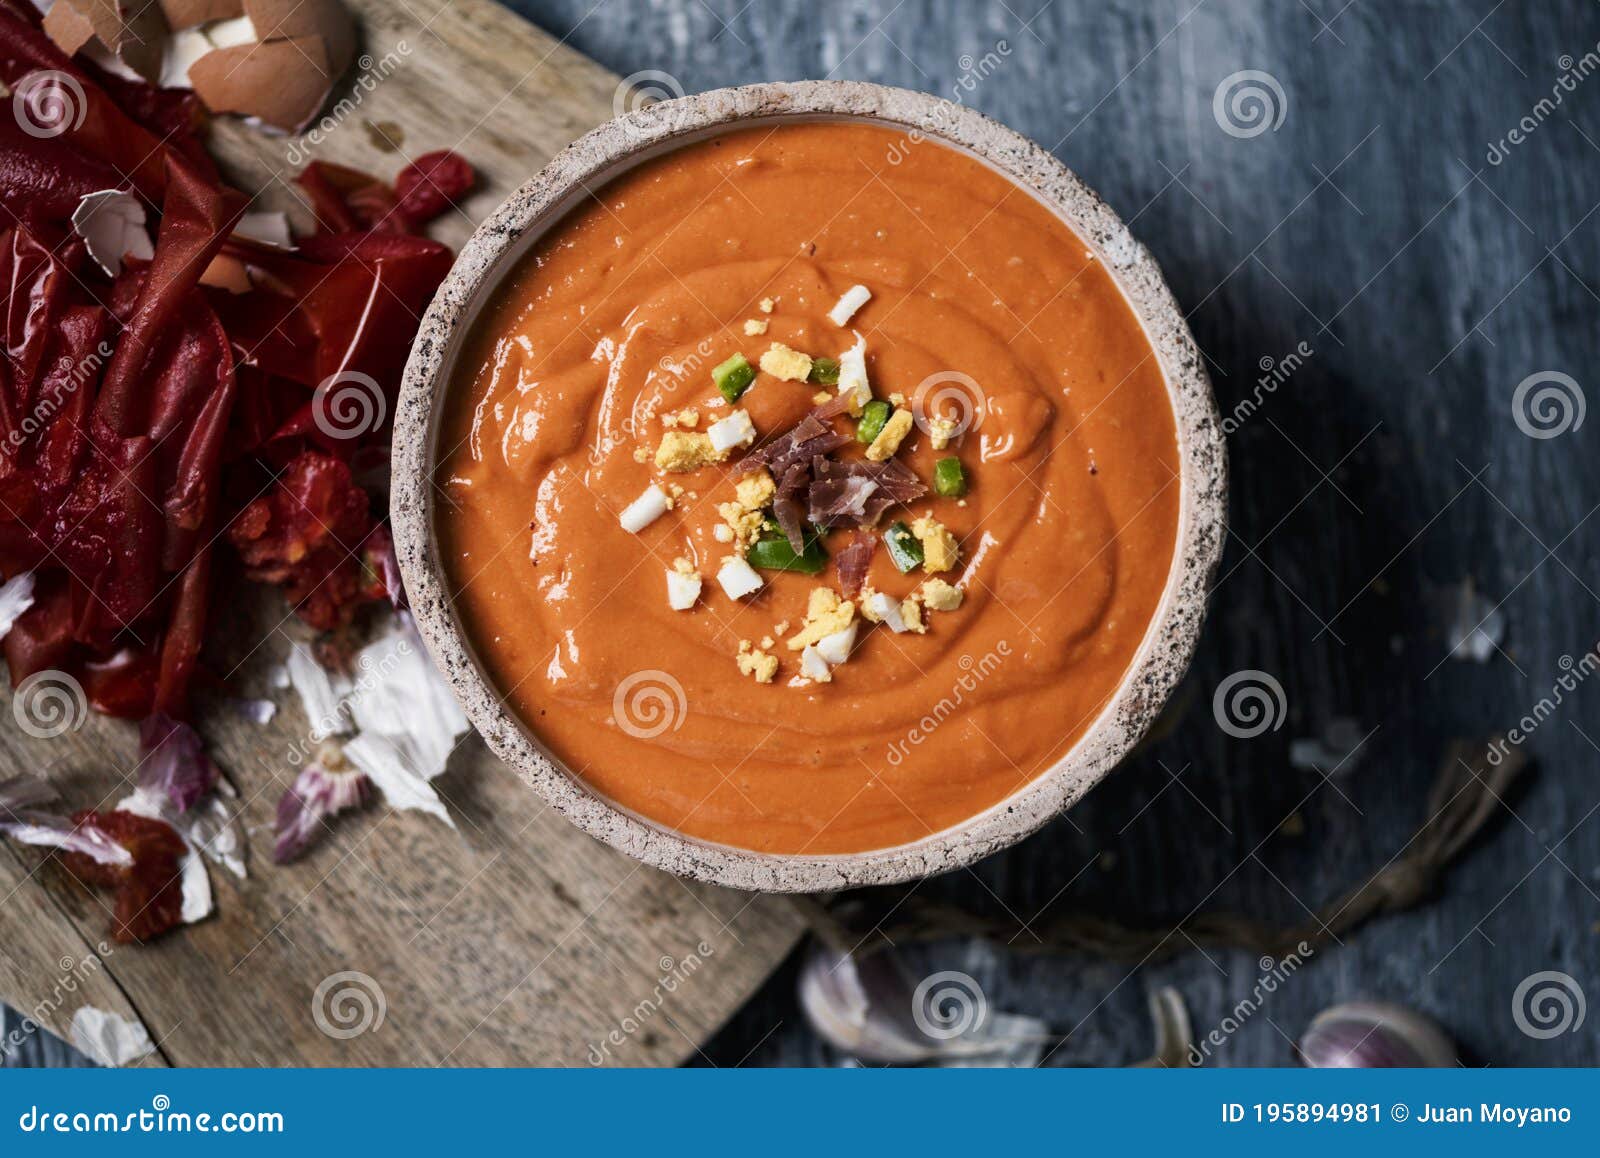 spanish porra antequerana, a cold tomato soup